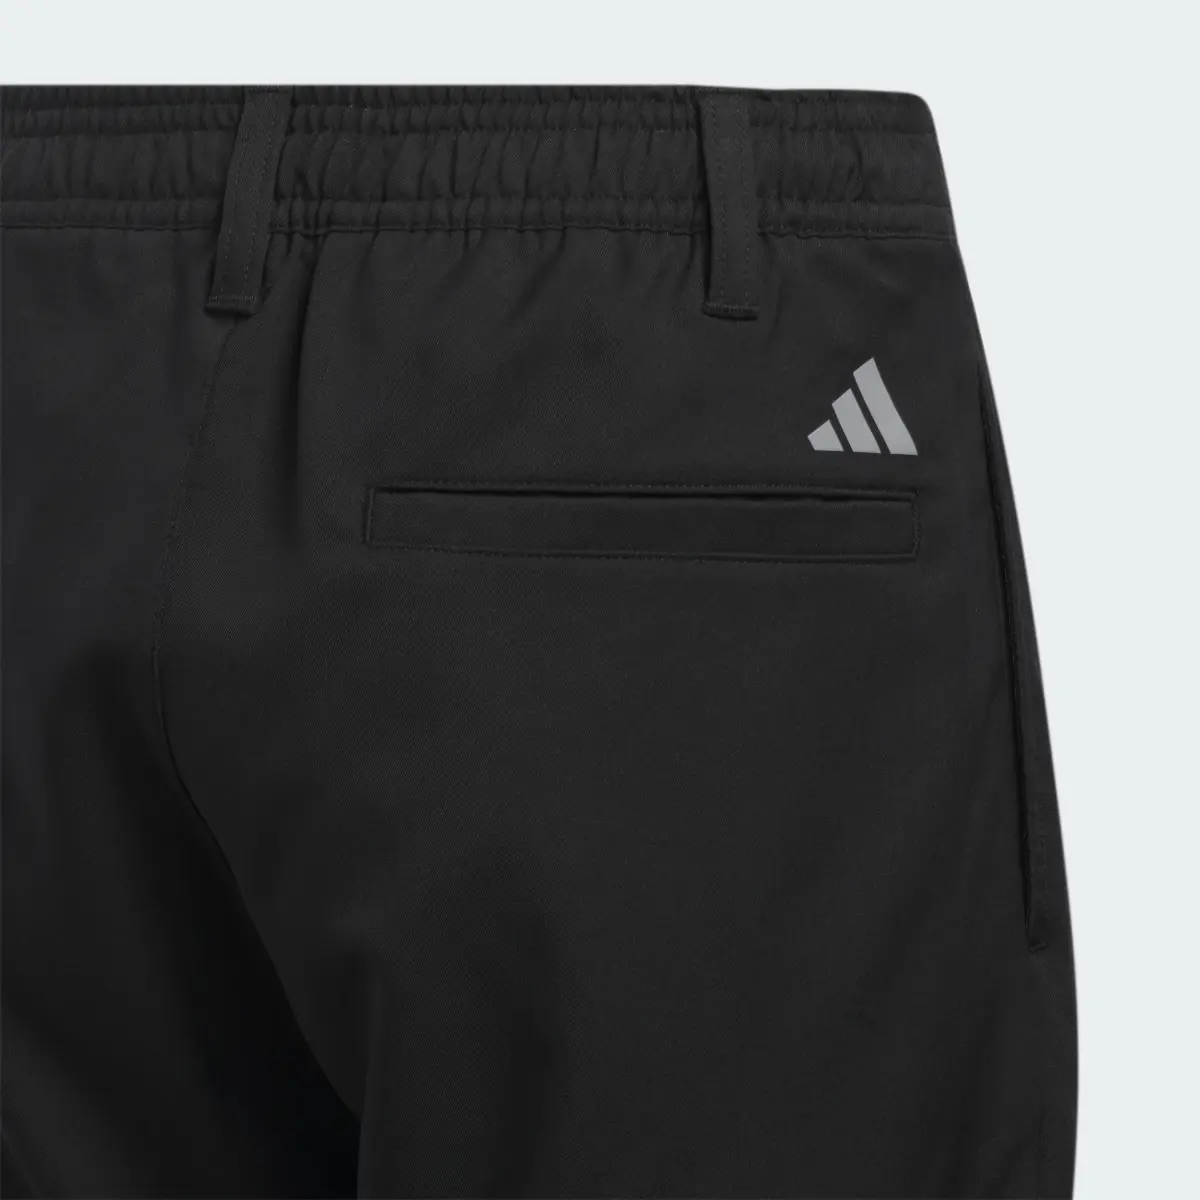 Adidas Pantalón corto Ultimate365 Adjustable (Adolescentes). 3